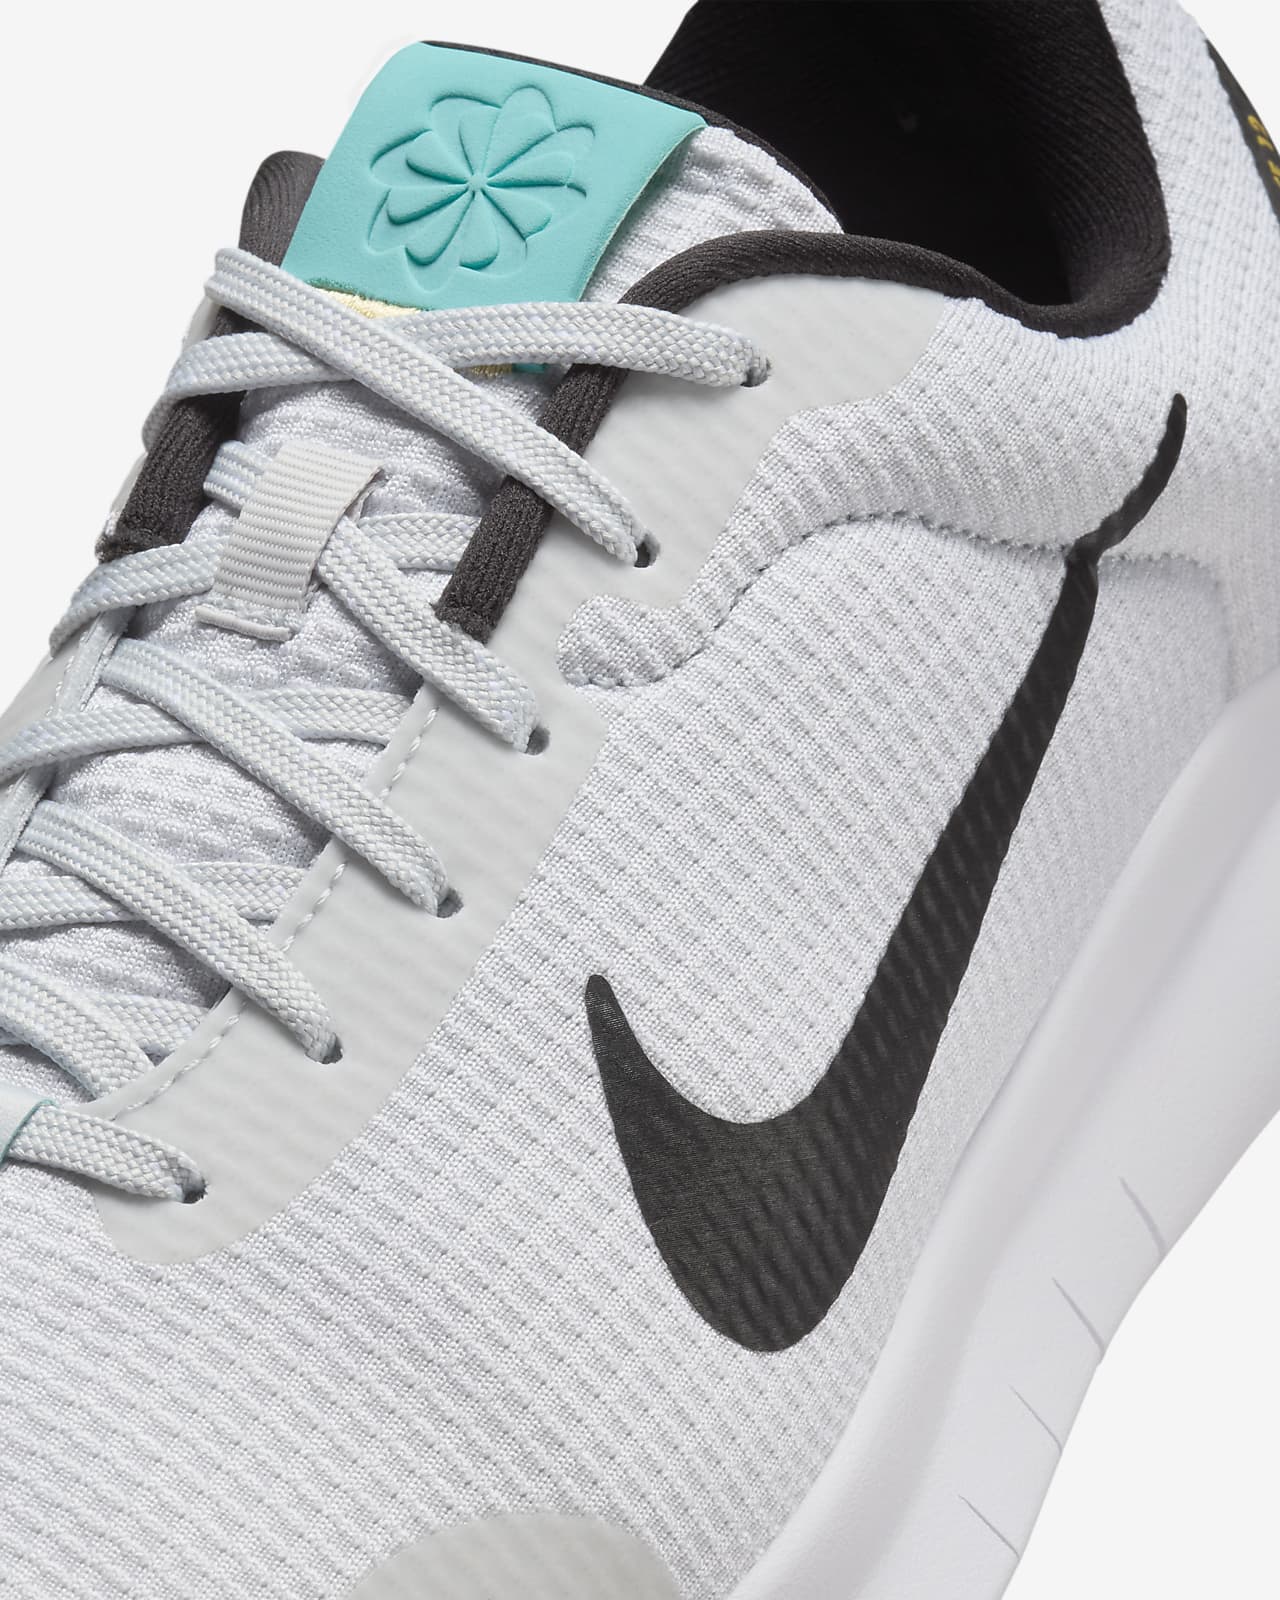 Nike Flex Experience Run 12 Running Shoe - Women's - Free Shipping